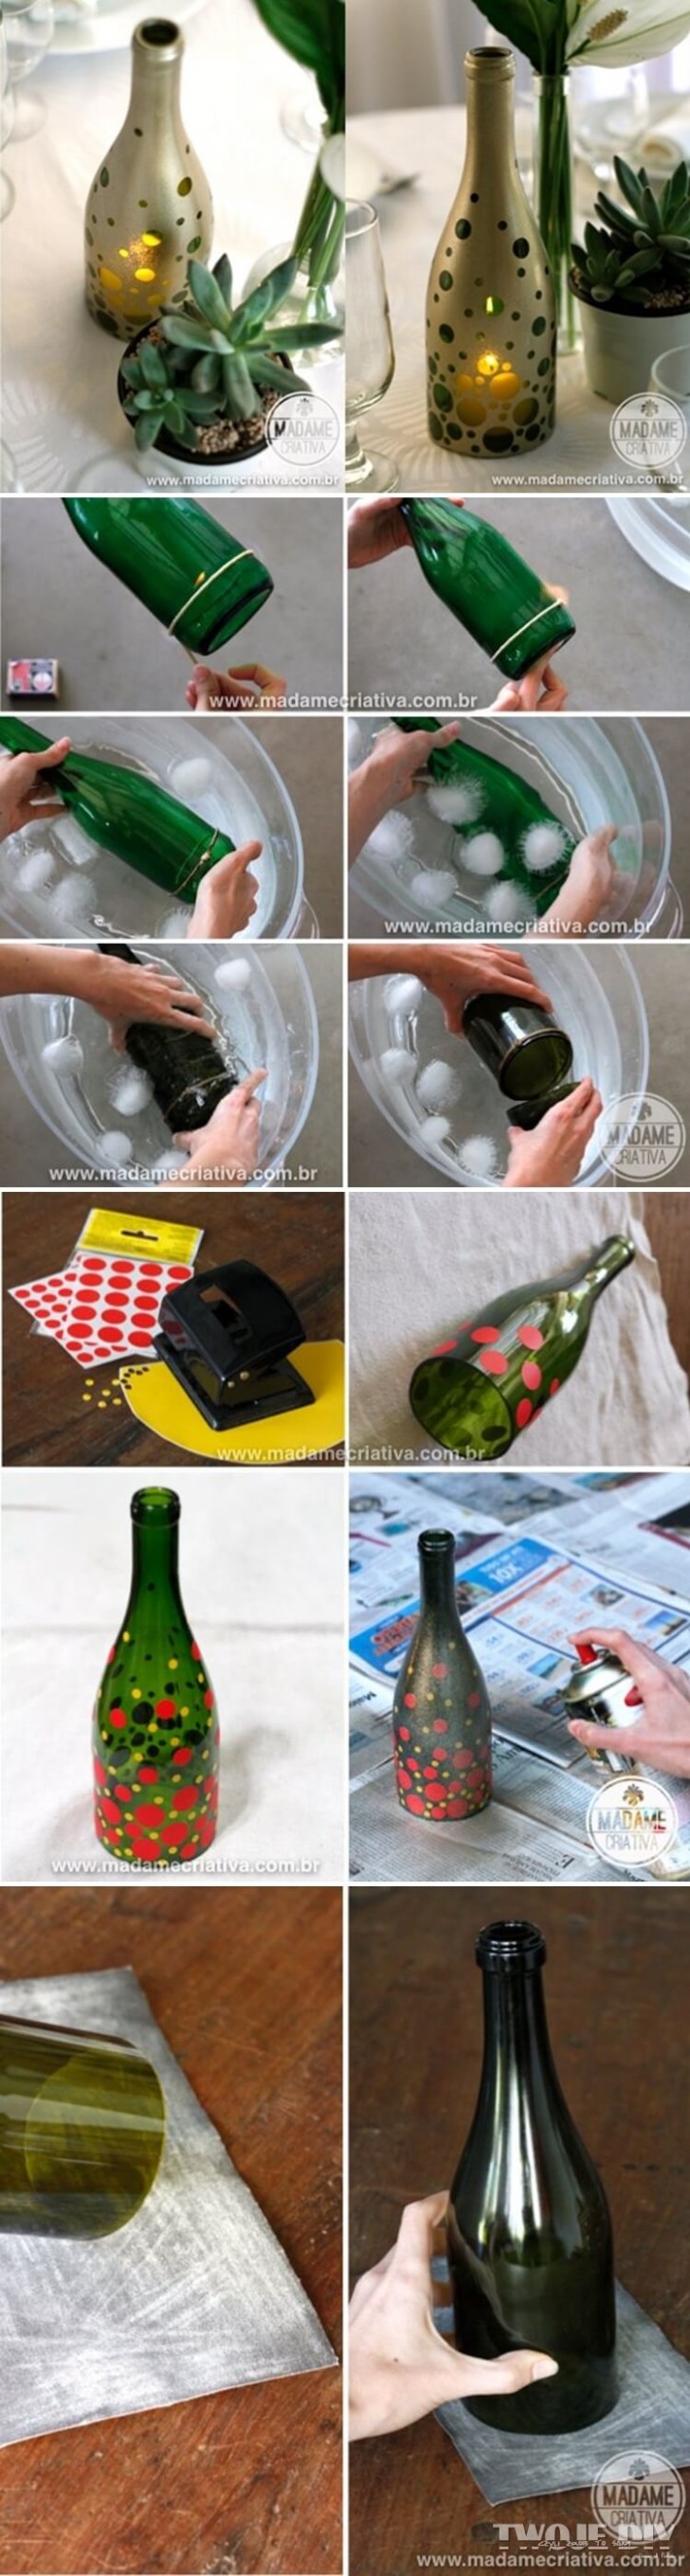 2. Door een fles te snijden en vervolgens stickers en spuitverf te gebruiken ontstaan er stolpen die je als kandelaars kunt gebruiken